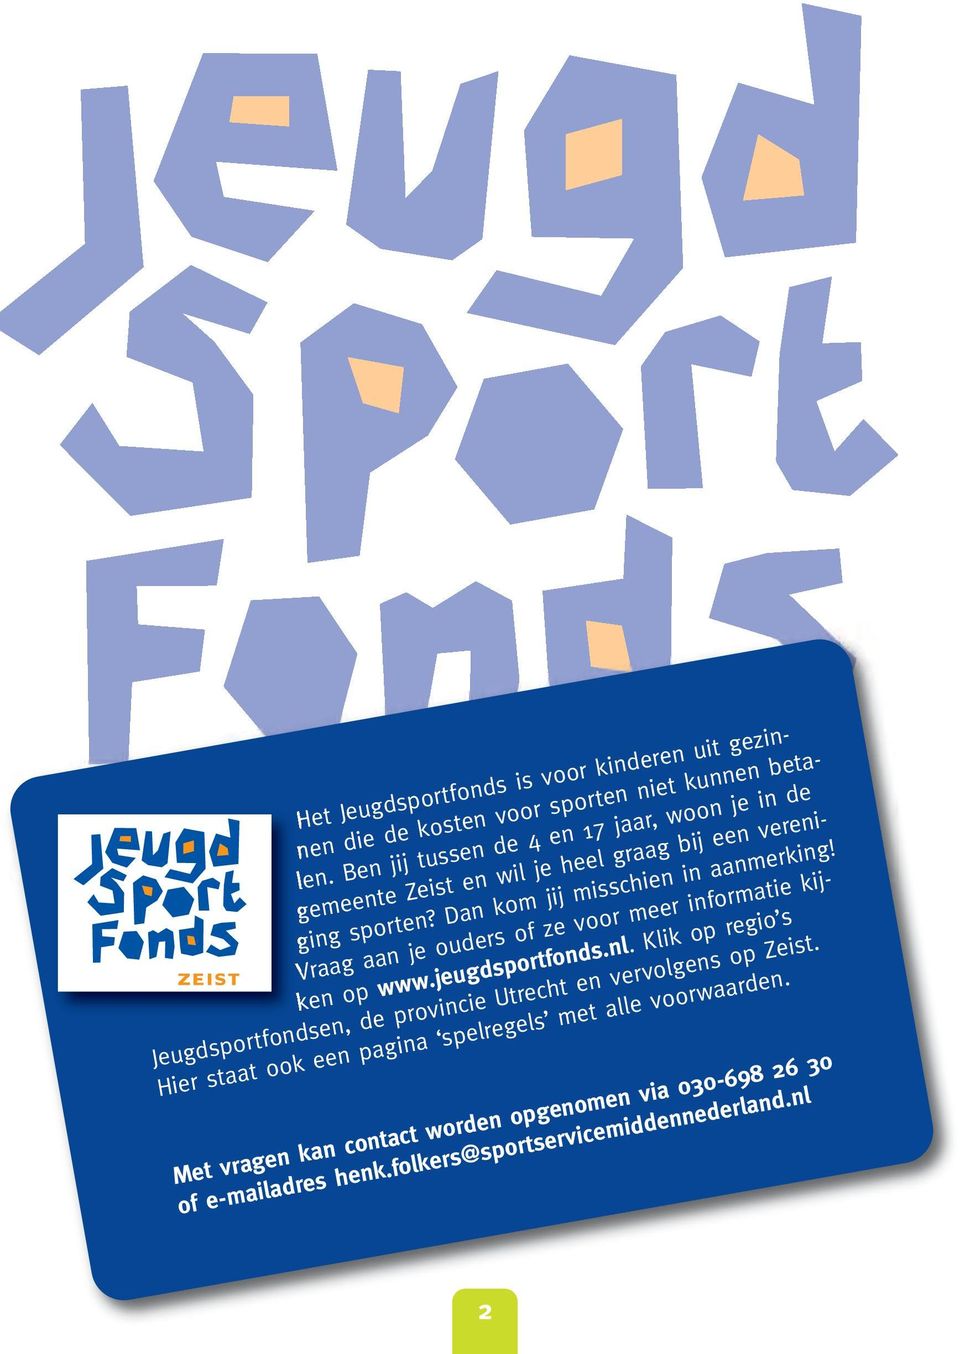 Vraag aan je ouders of ze voor meer informatie kijken op www.jeugdsportfonds.nl.